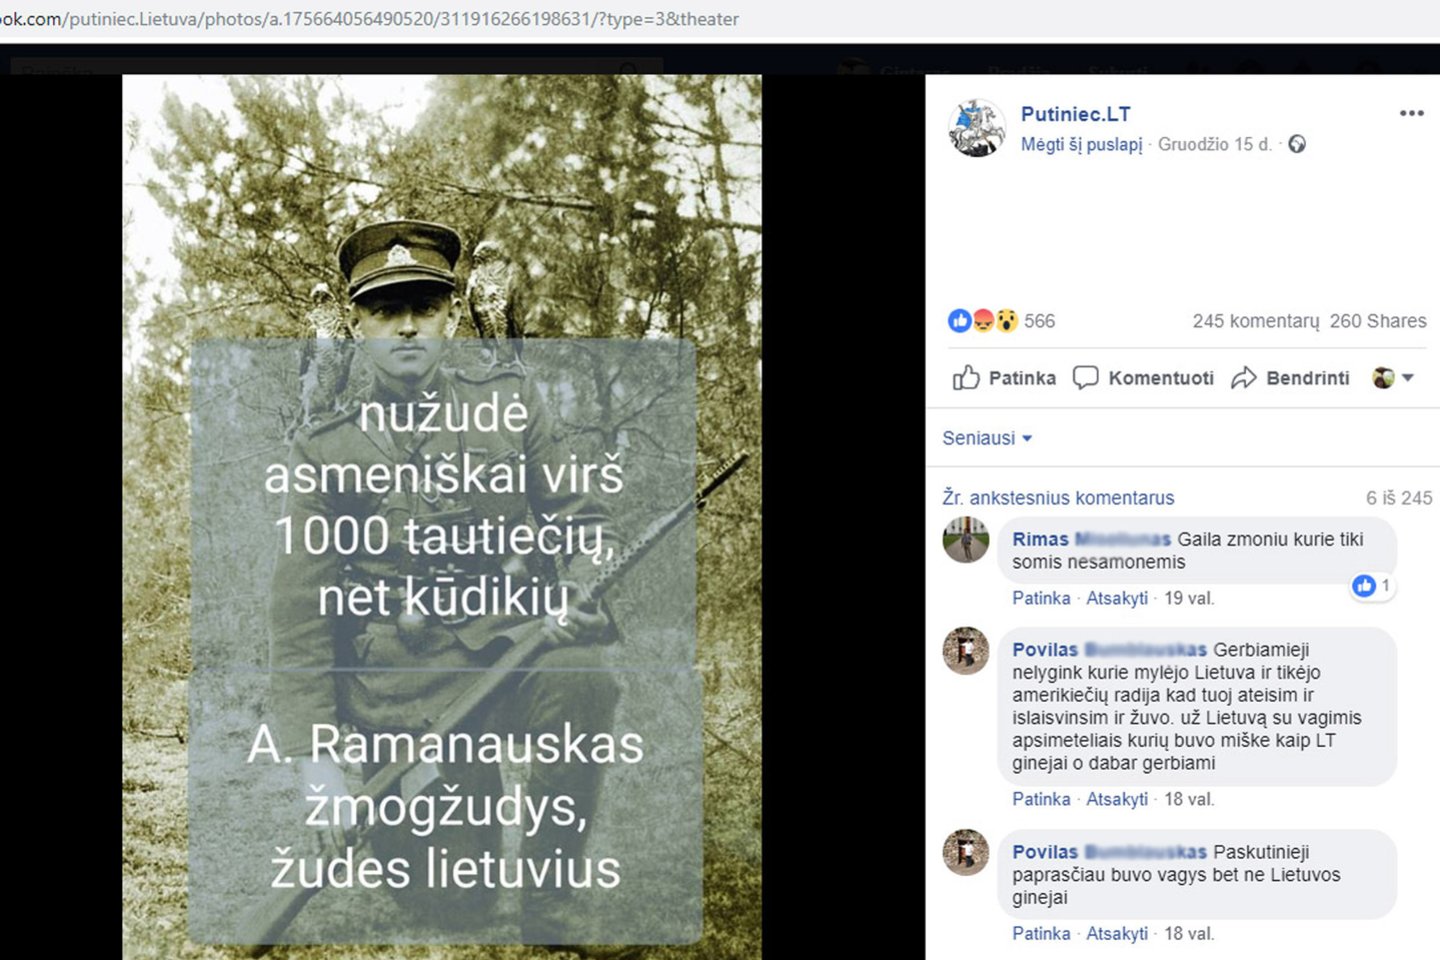 Internete siaučiantys prorusiški troliai skleidžia šmeižtą apie Lietuvos valstybės vadovu oficialiai pripažintą sovietų budelių kankintą ir nužudytą partizanų vadą A.Ramanauską - Vanagą.